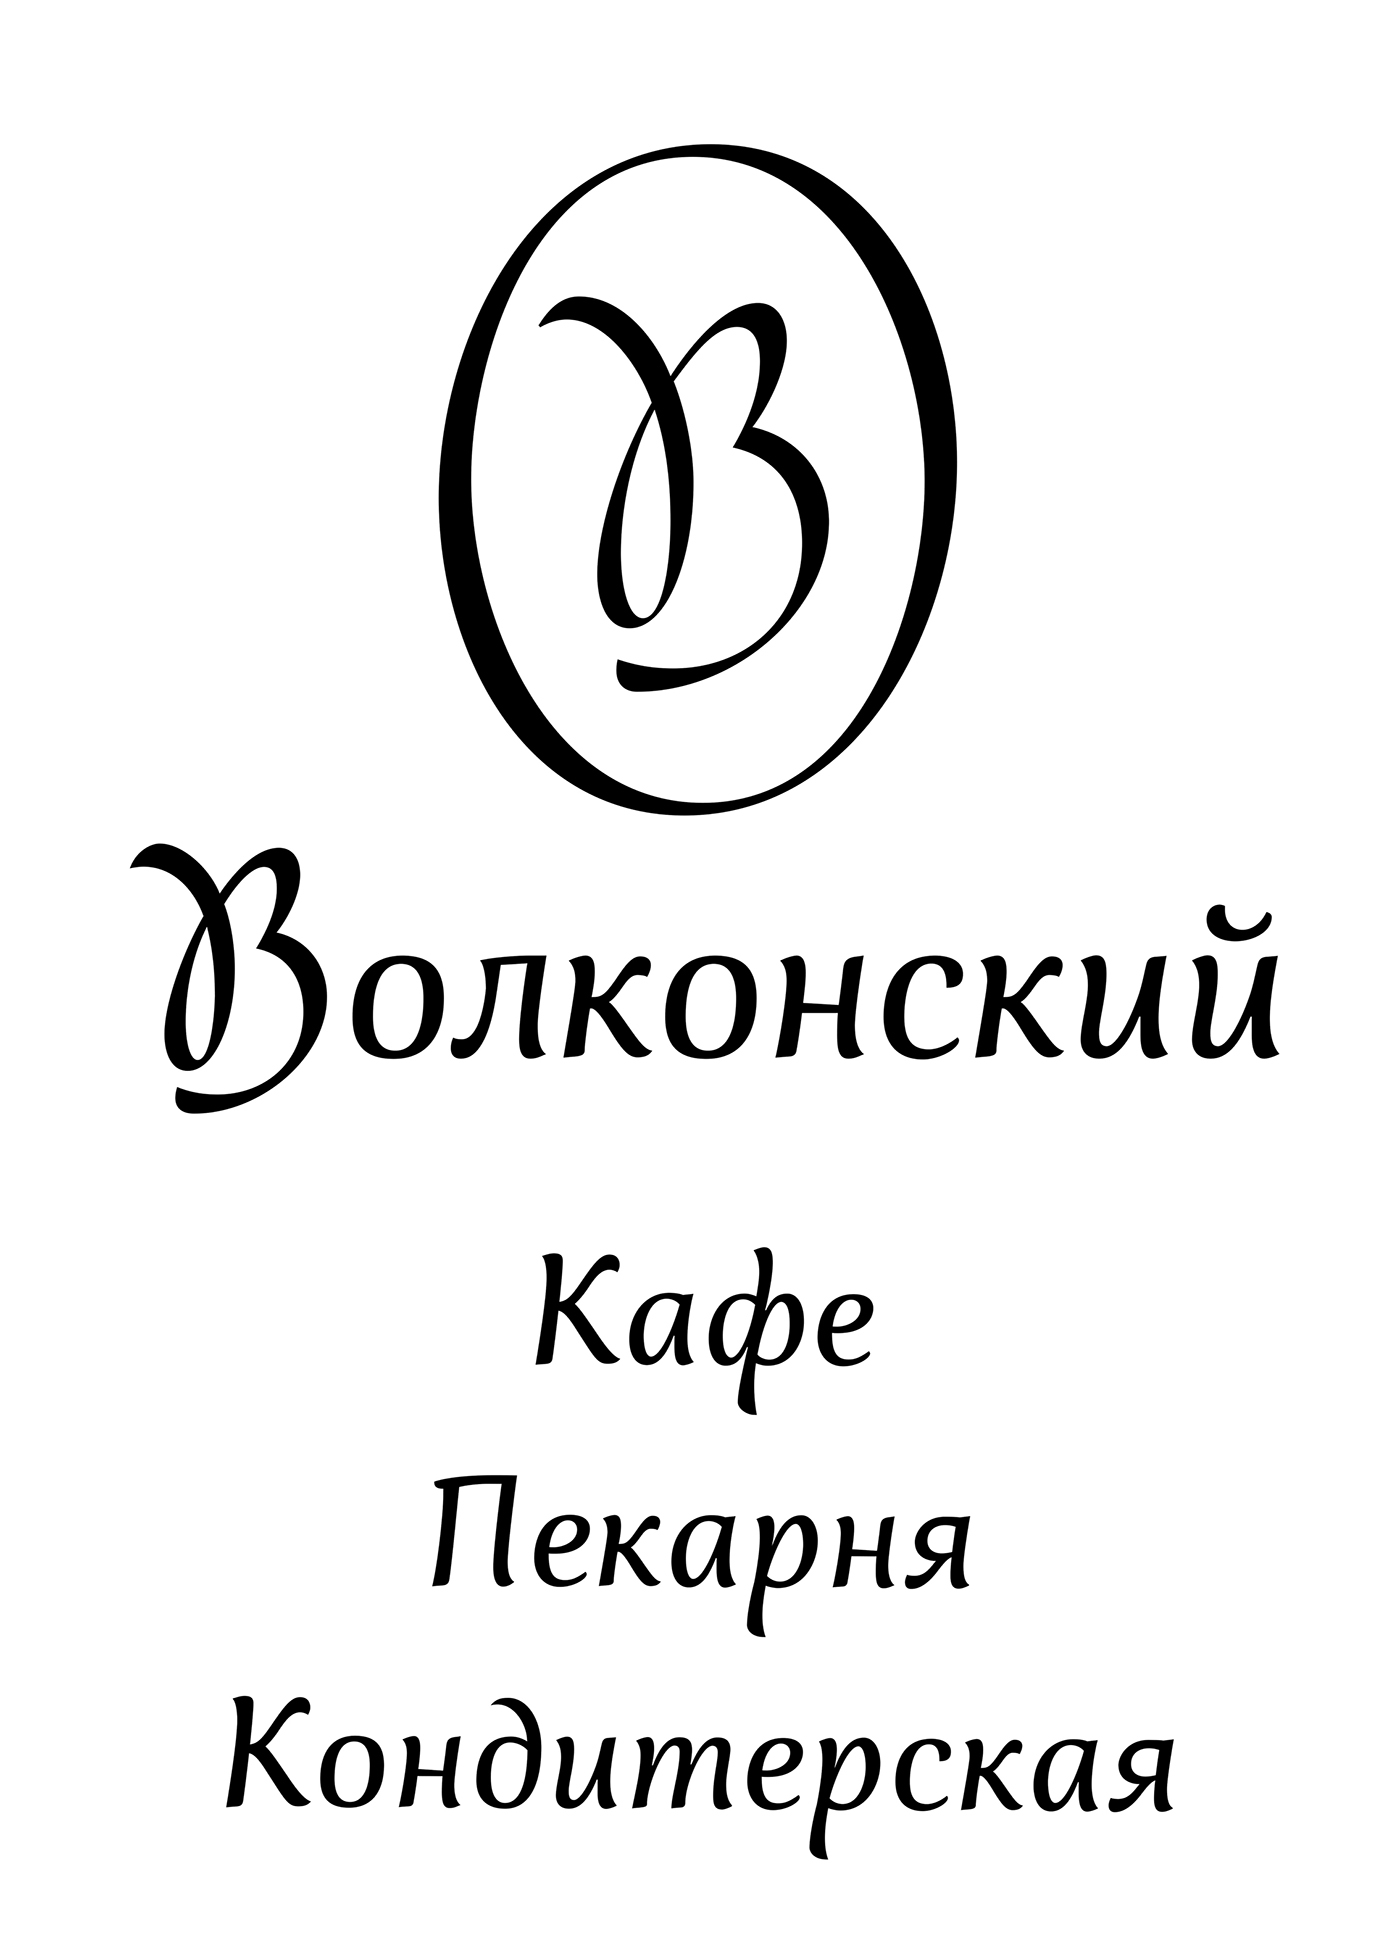 Logotype Typeface typography  